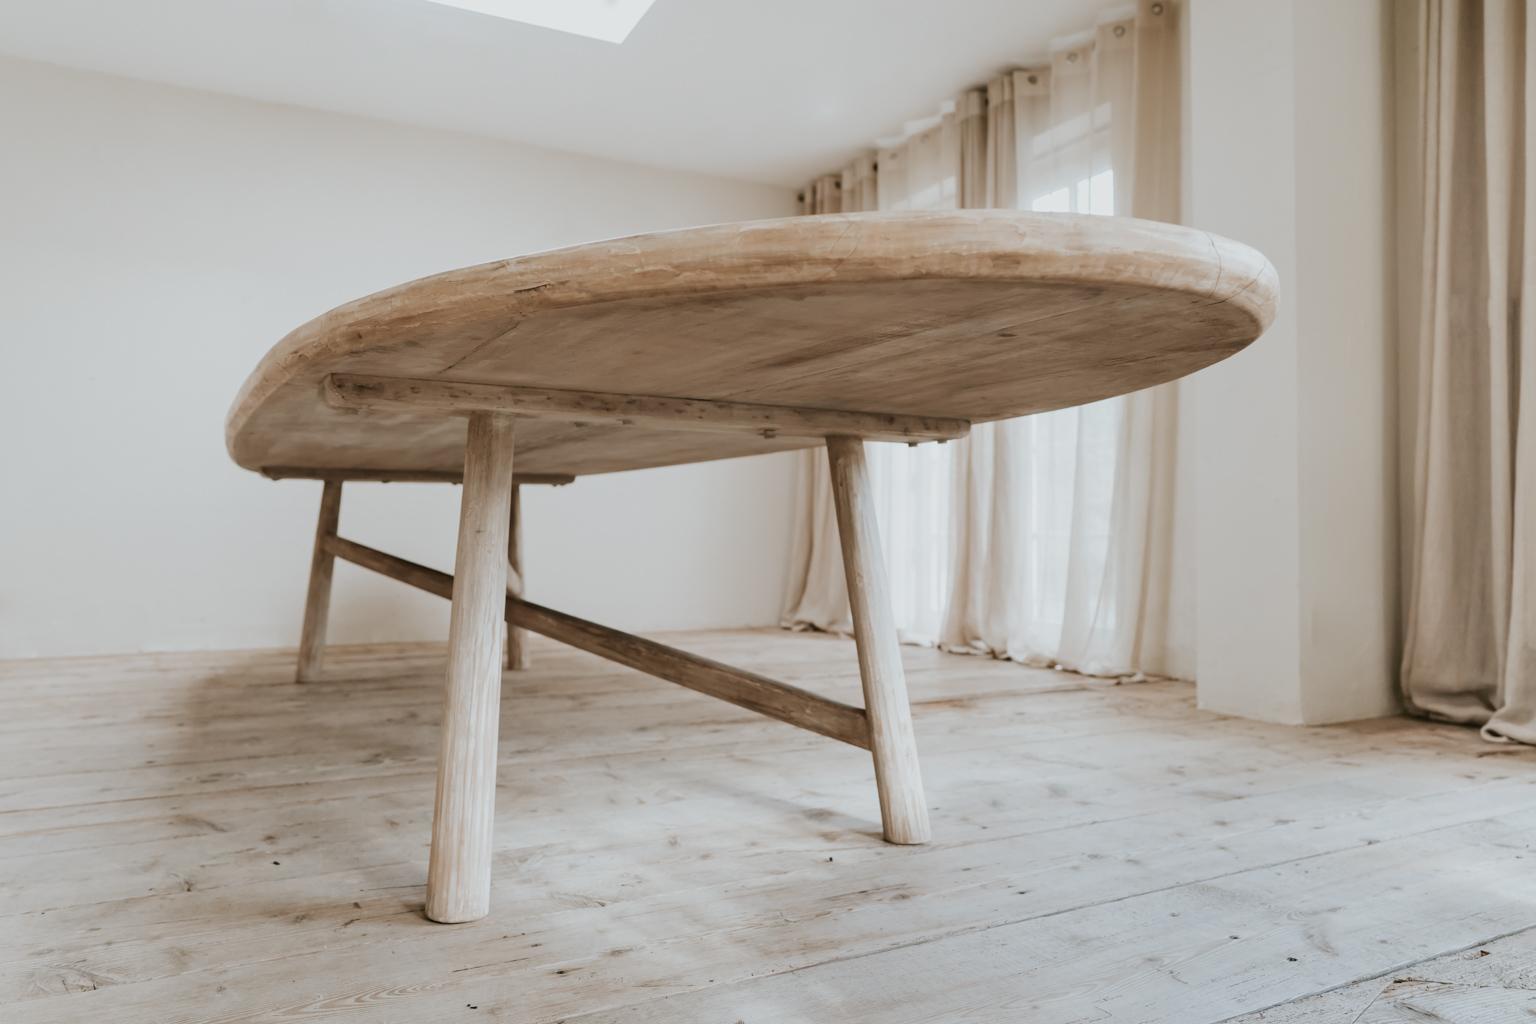 Belgian Customized /Creation of Extra Large Poplarwood Table 